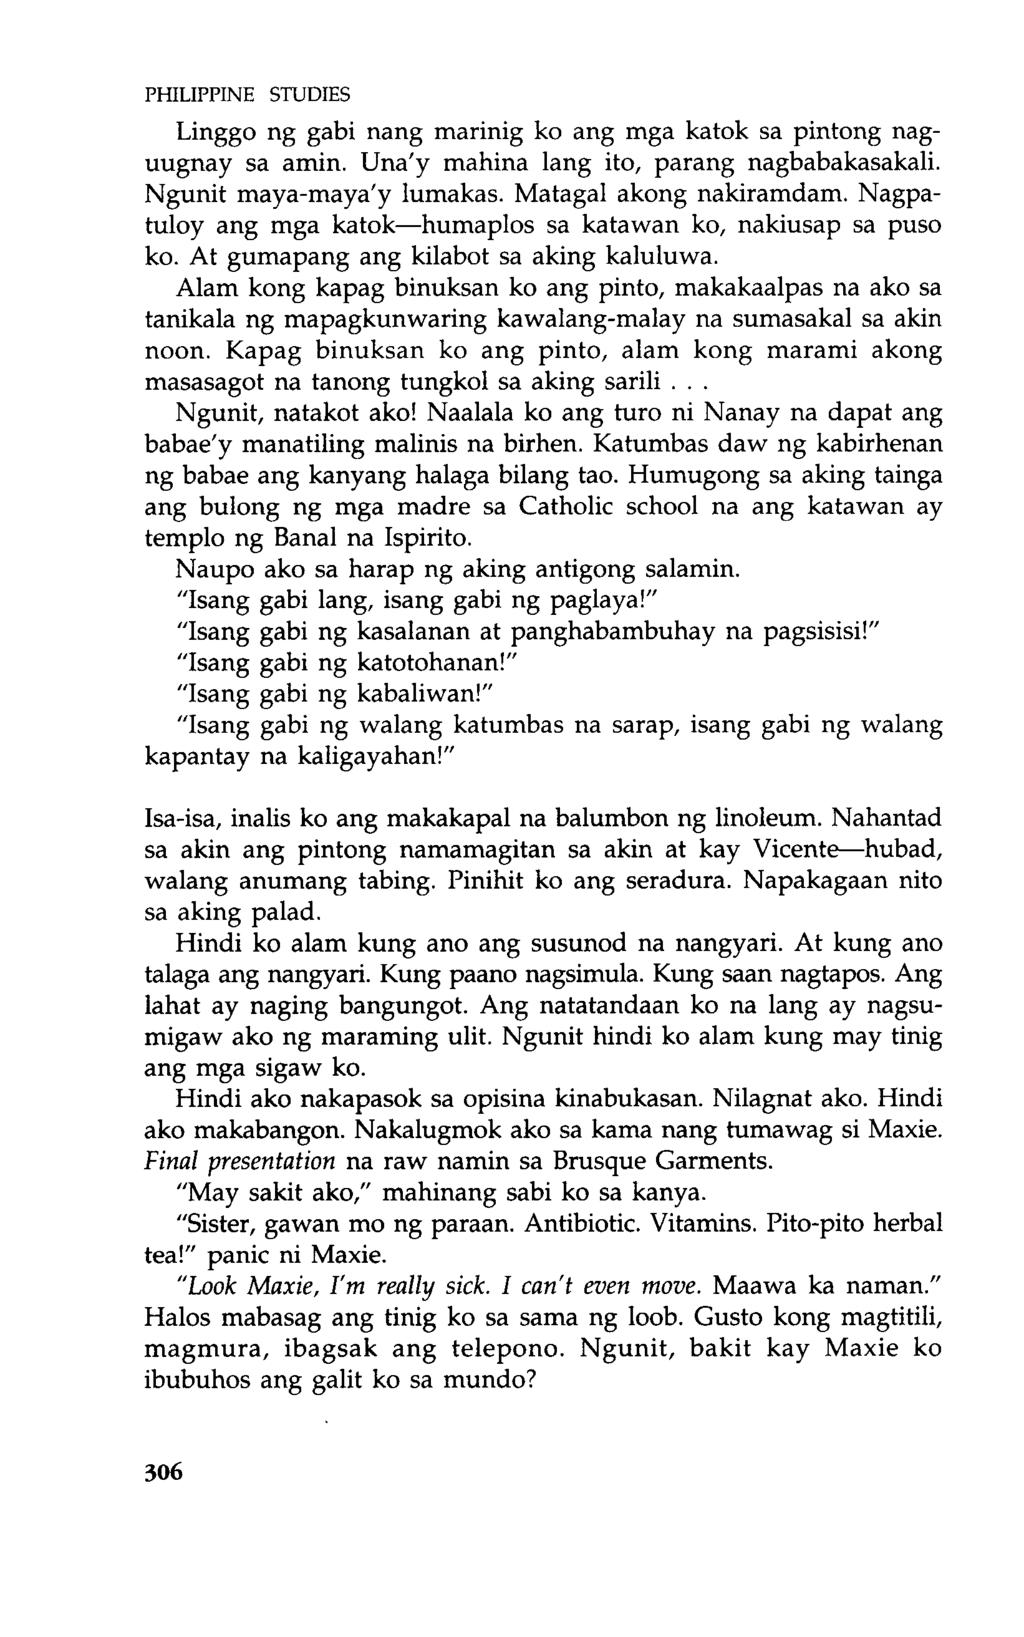 PHILIPPINE STUDIES Linggo ng gabi nang marinig ko ang mga katok sa pintong naguugnay sa amin. Una'y mahina lang ito, parang nagbabakasakali. Ngunit maya-maya'y lumakas. Matagal akong nakiramdam.